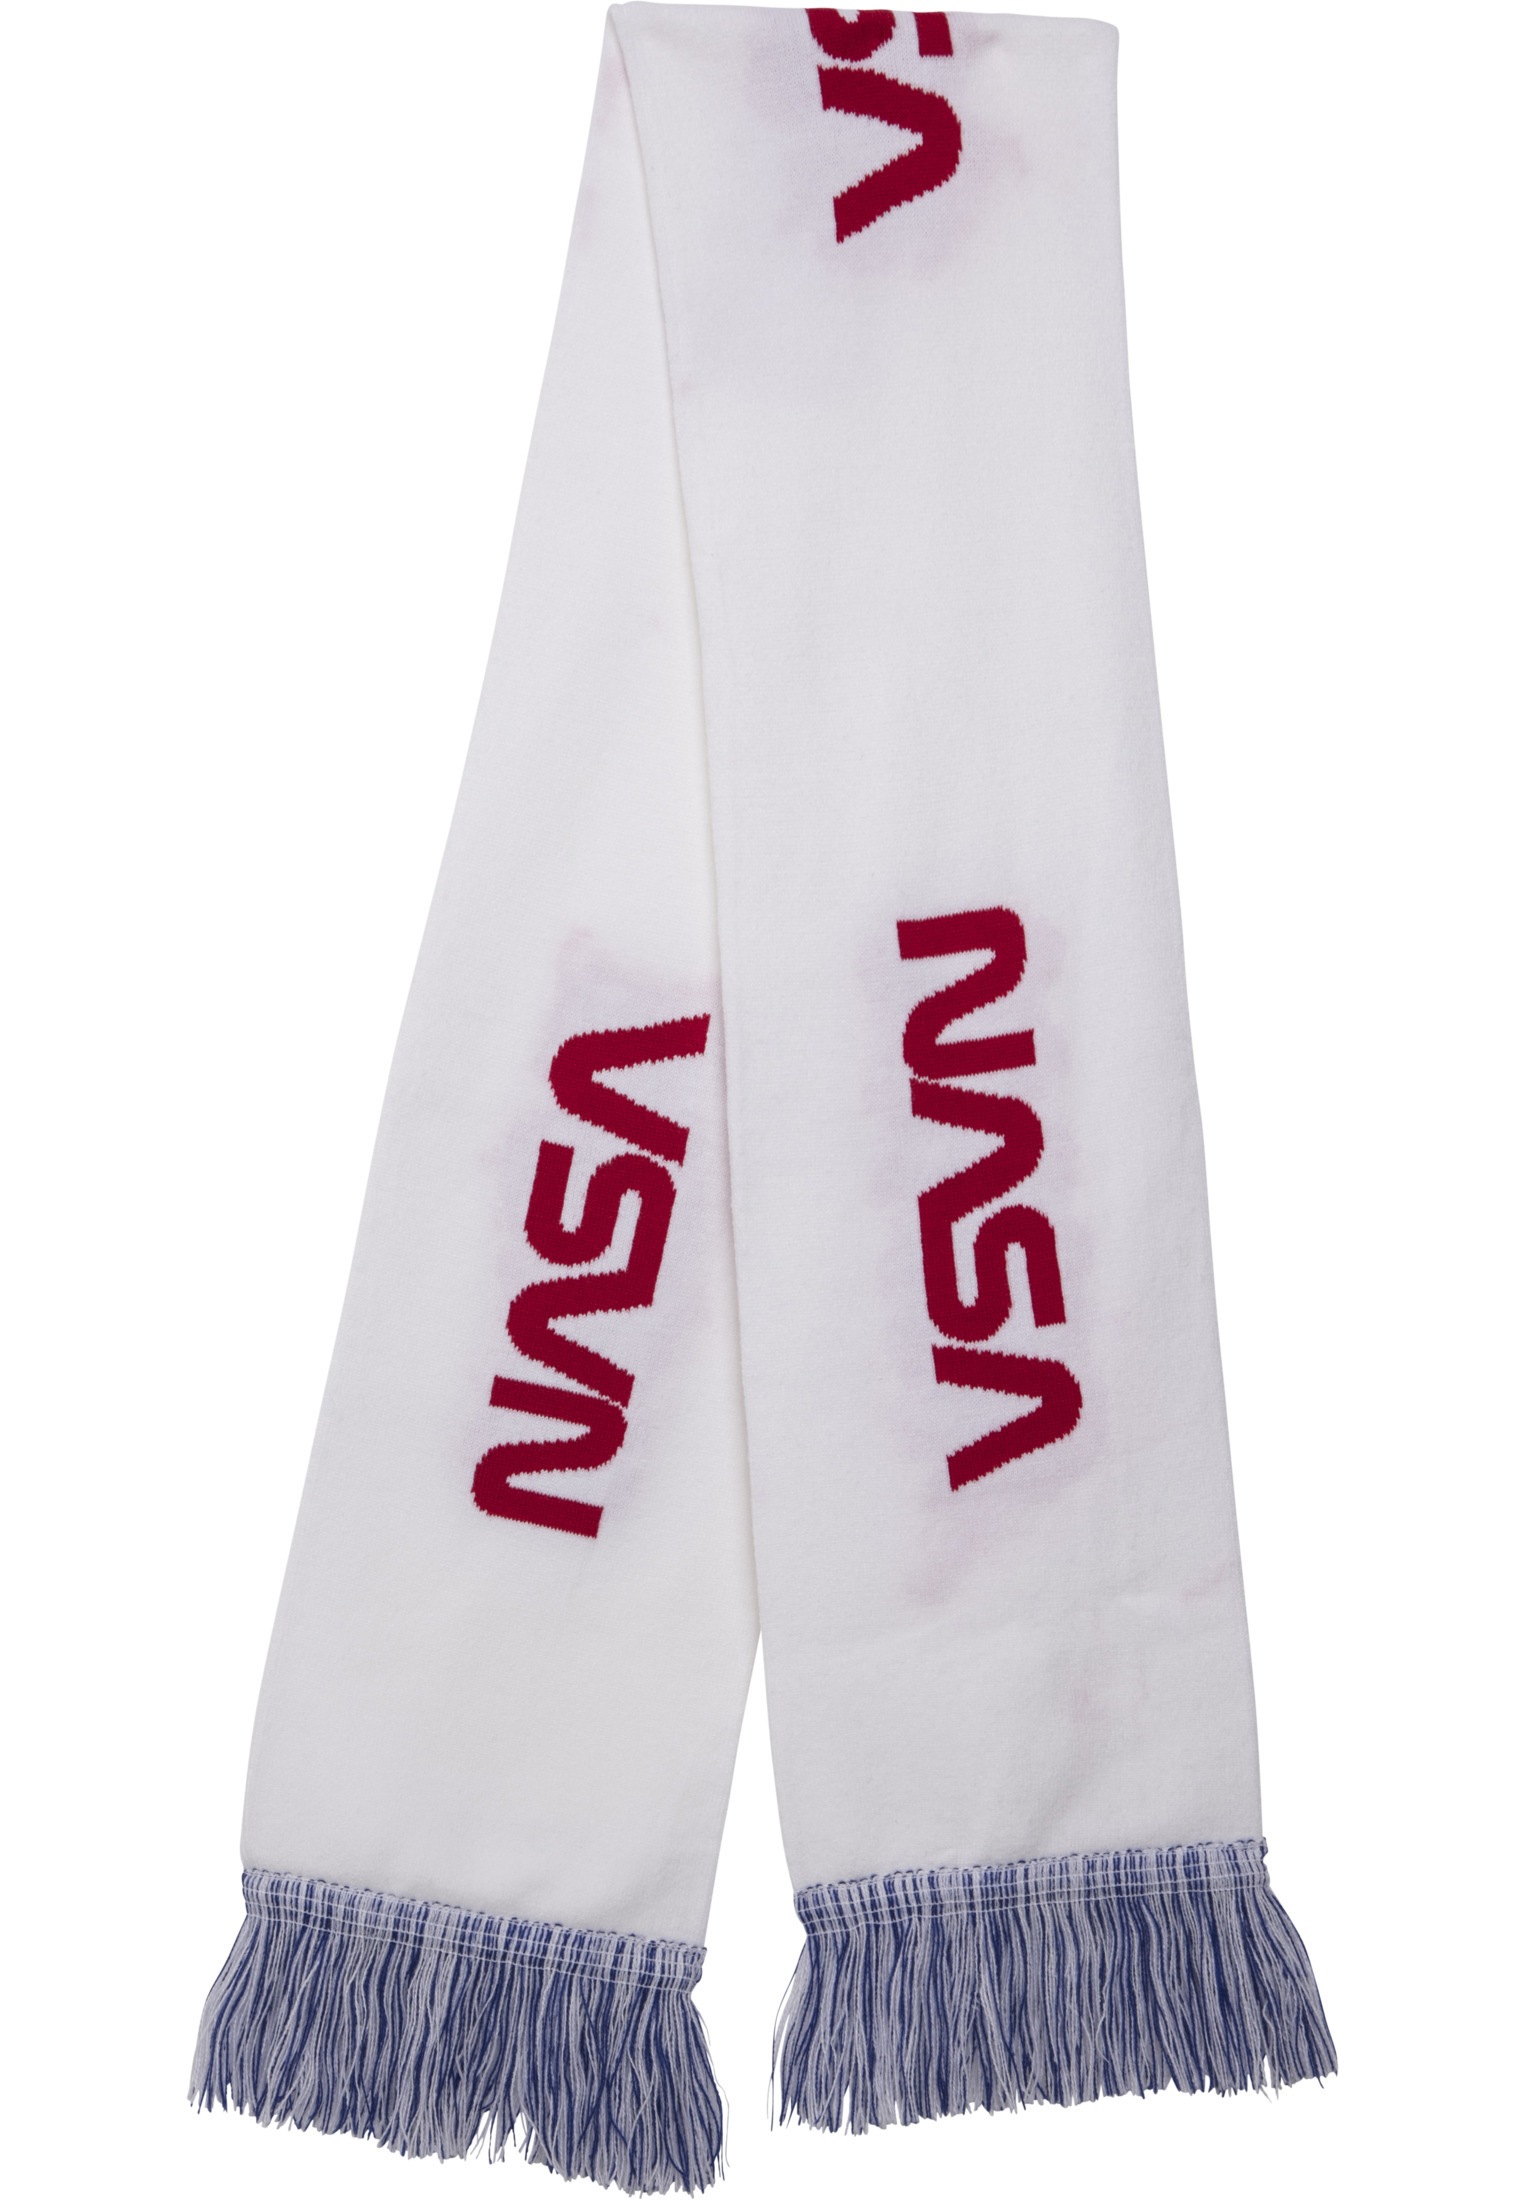 MisterTee Schal »Unisex NASA Scarf Knitted« (1 St.)